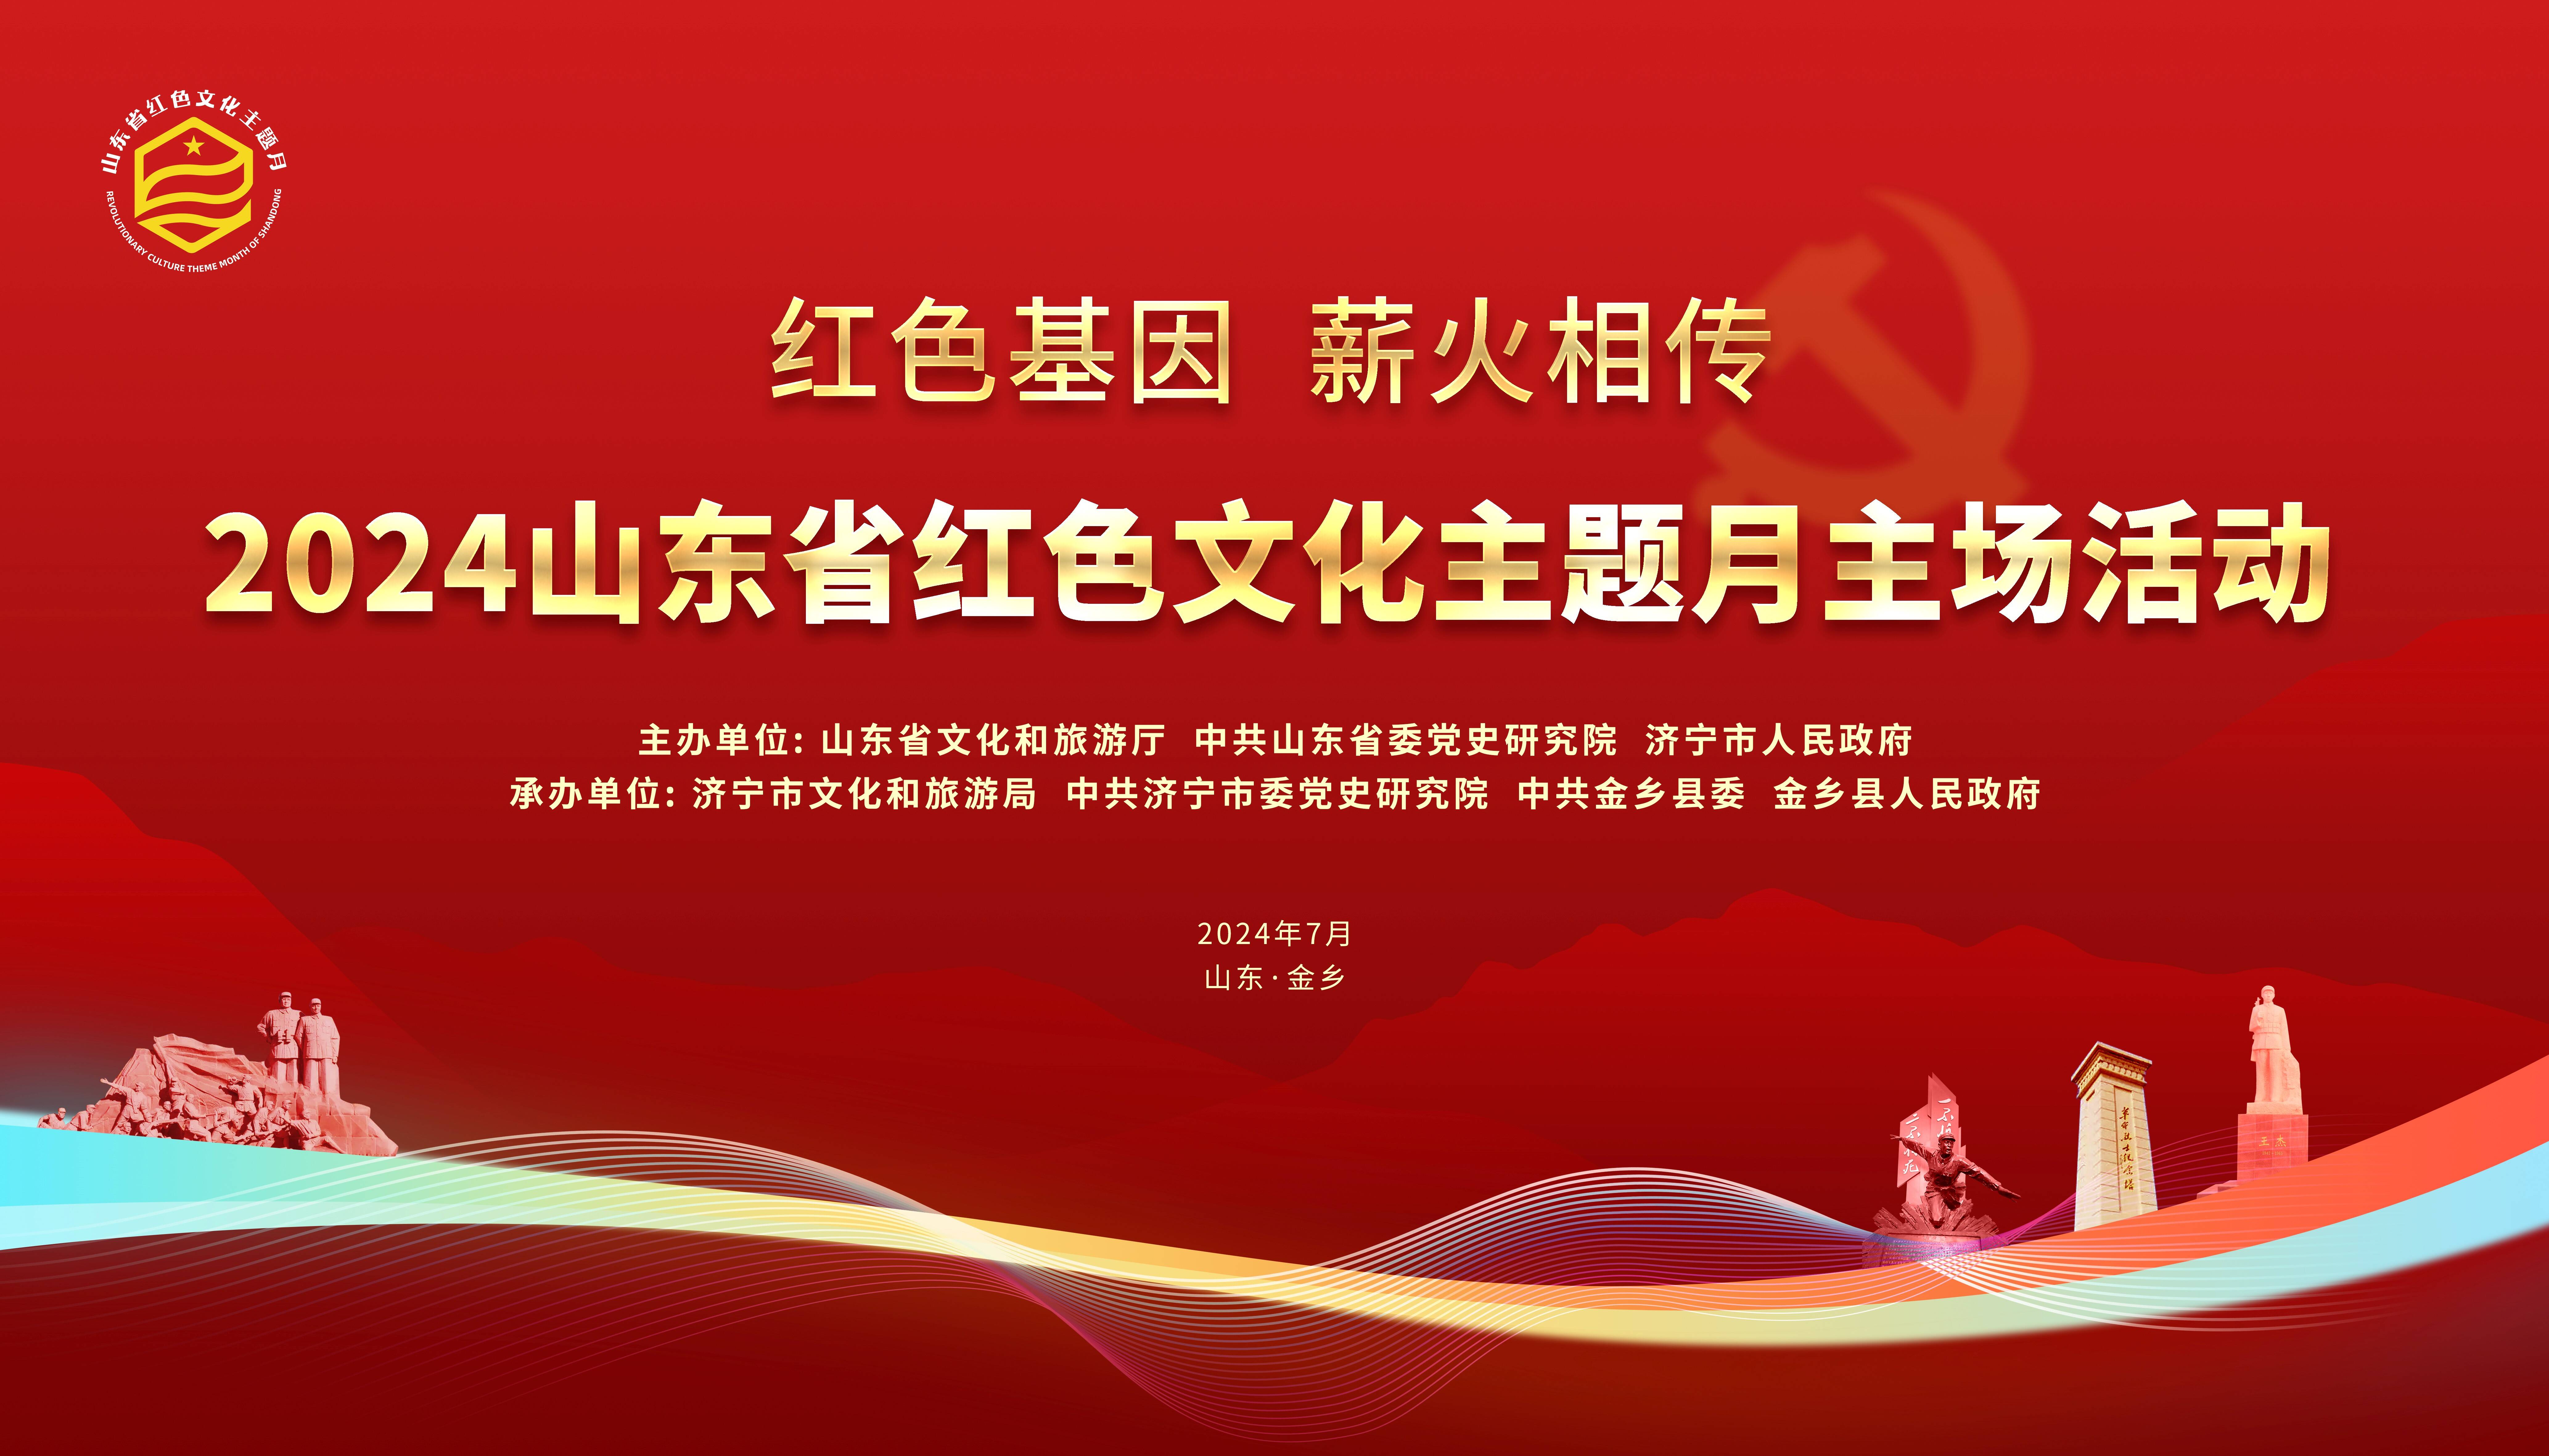 本年度红色文化主题月以红色基因 薪火相传为主题,结合庆祝中华人民